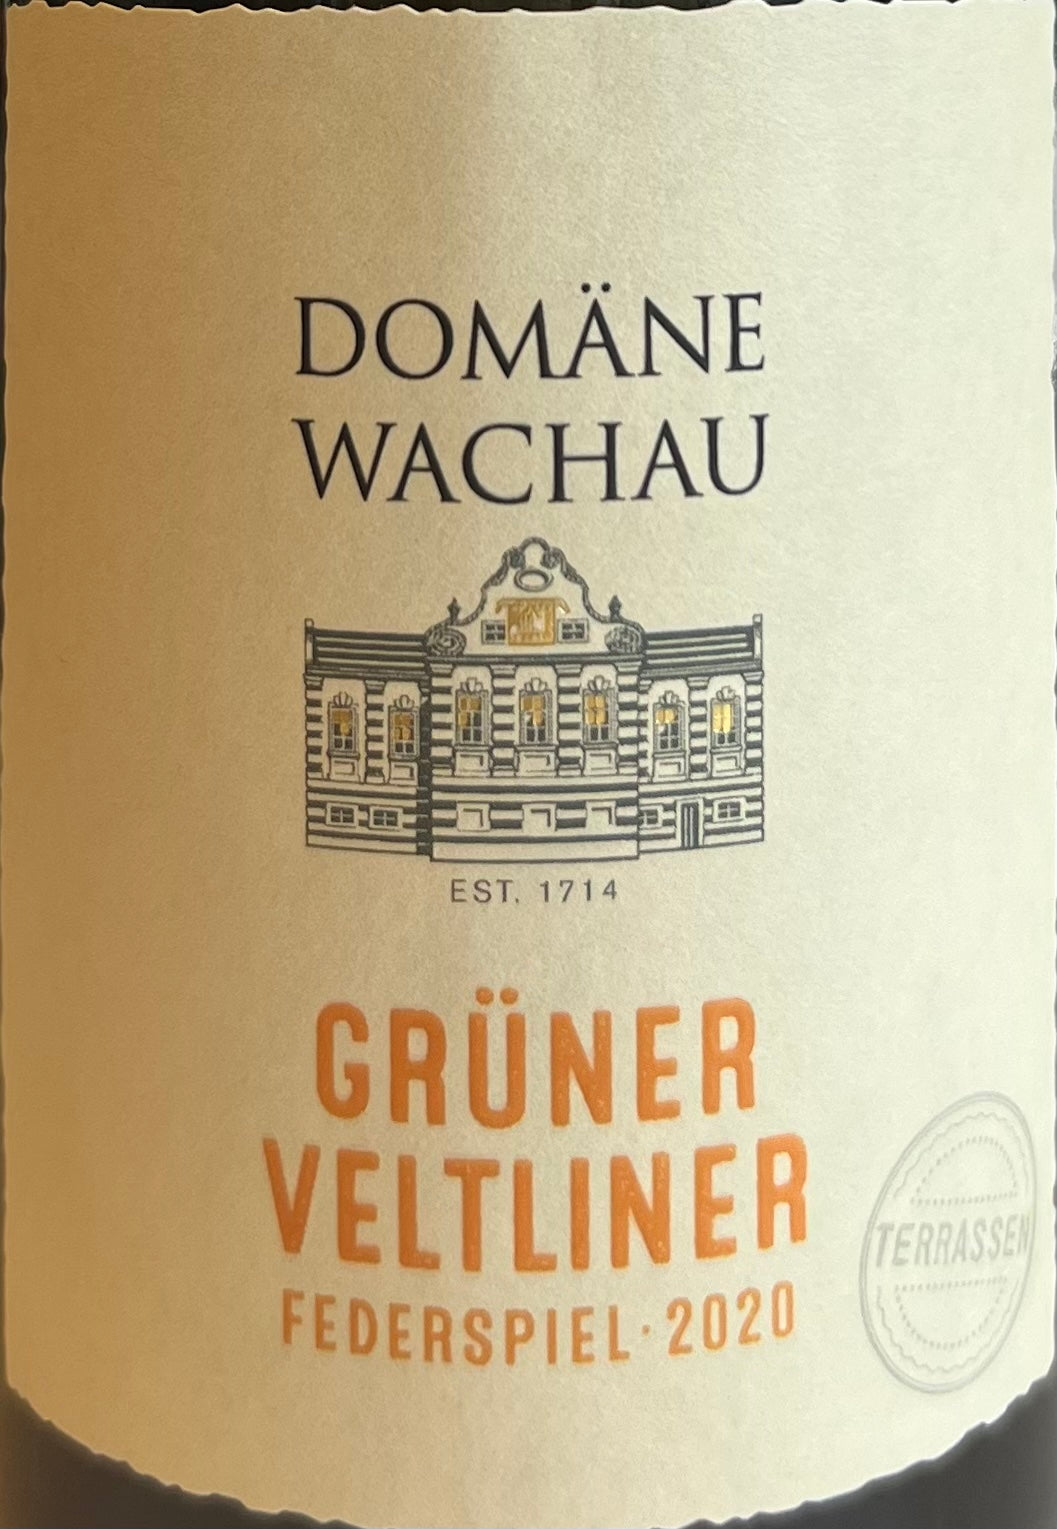 Domaine Wachau - Gruner Vetliner